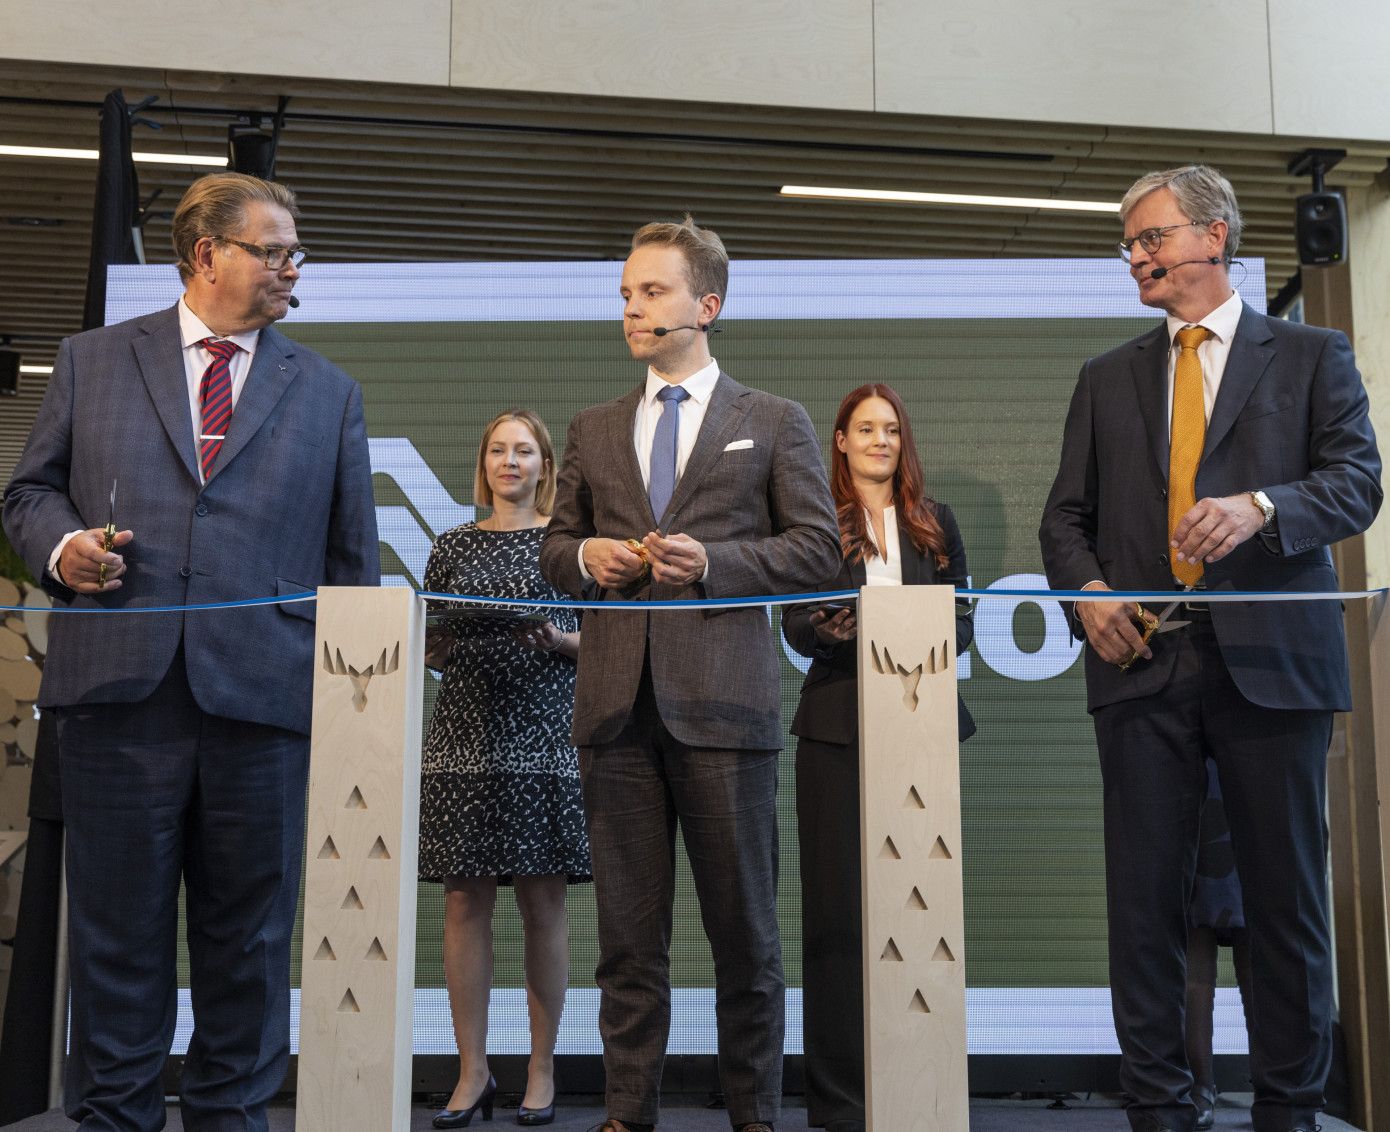 Продукцию из 3-D волокна теперь будут производить на опытном заводе, открытом Valmet совместно с Metsa Spring